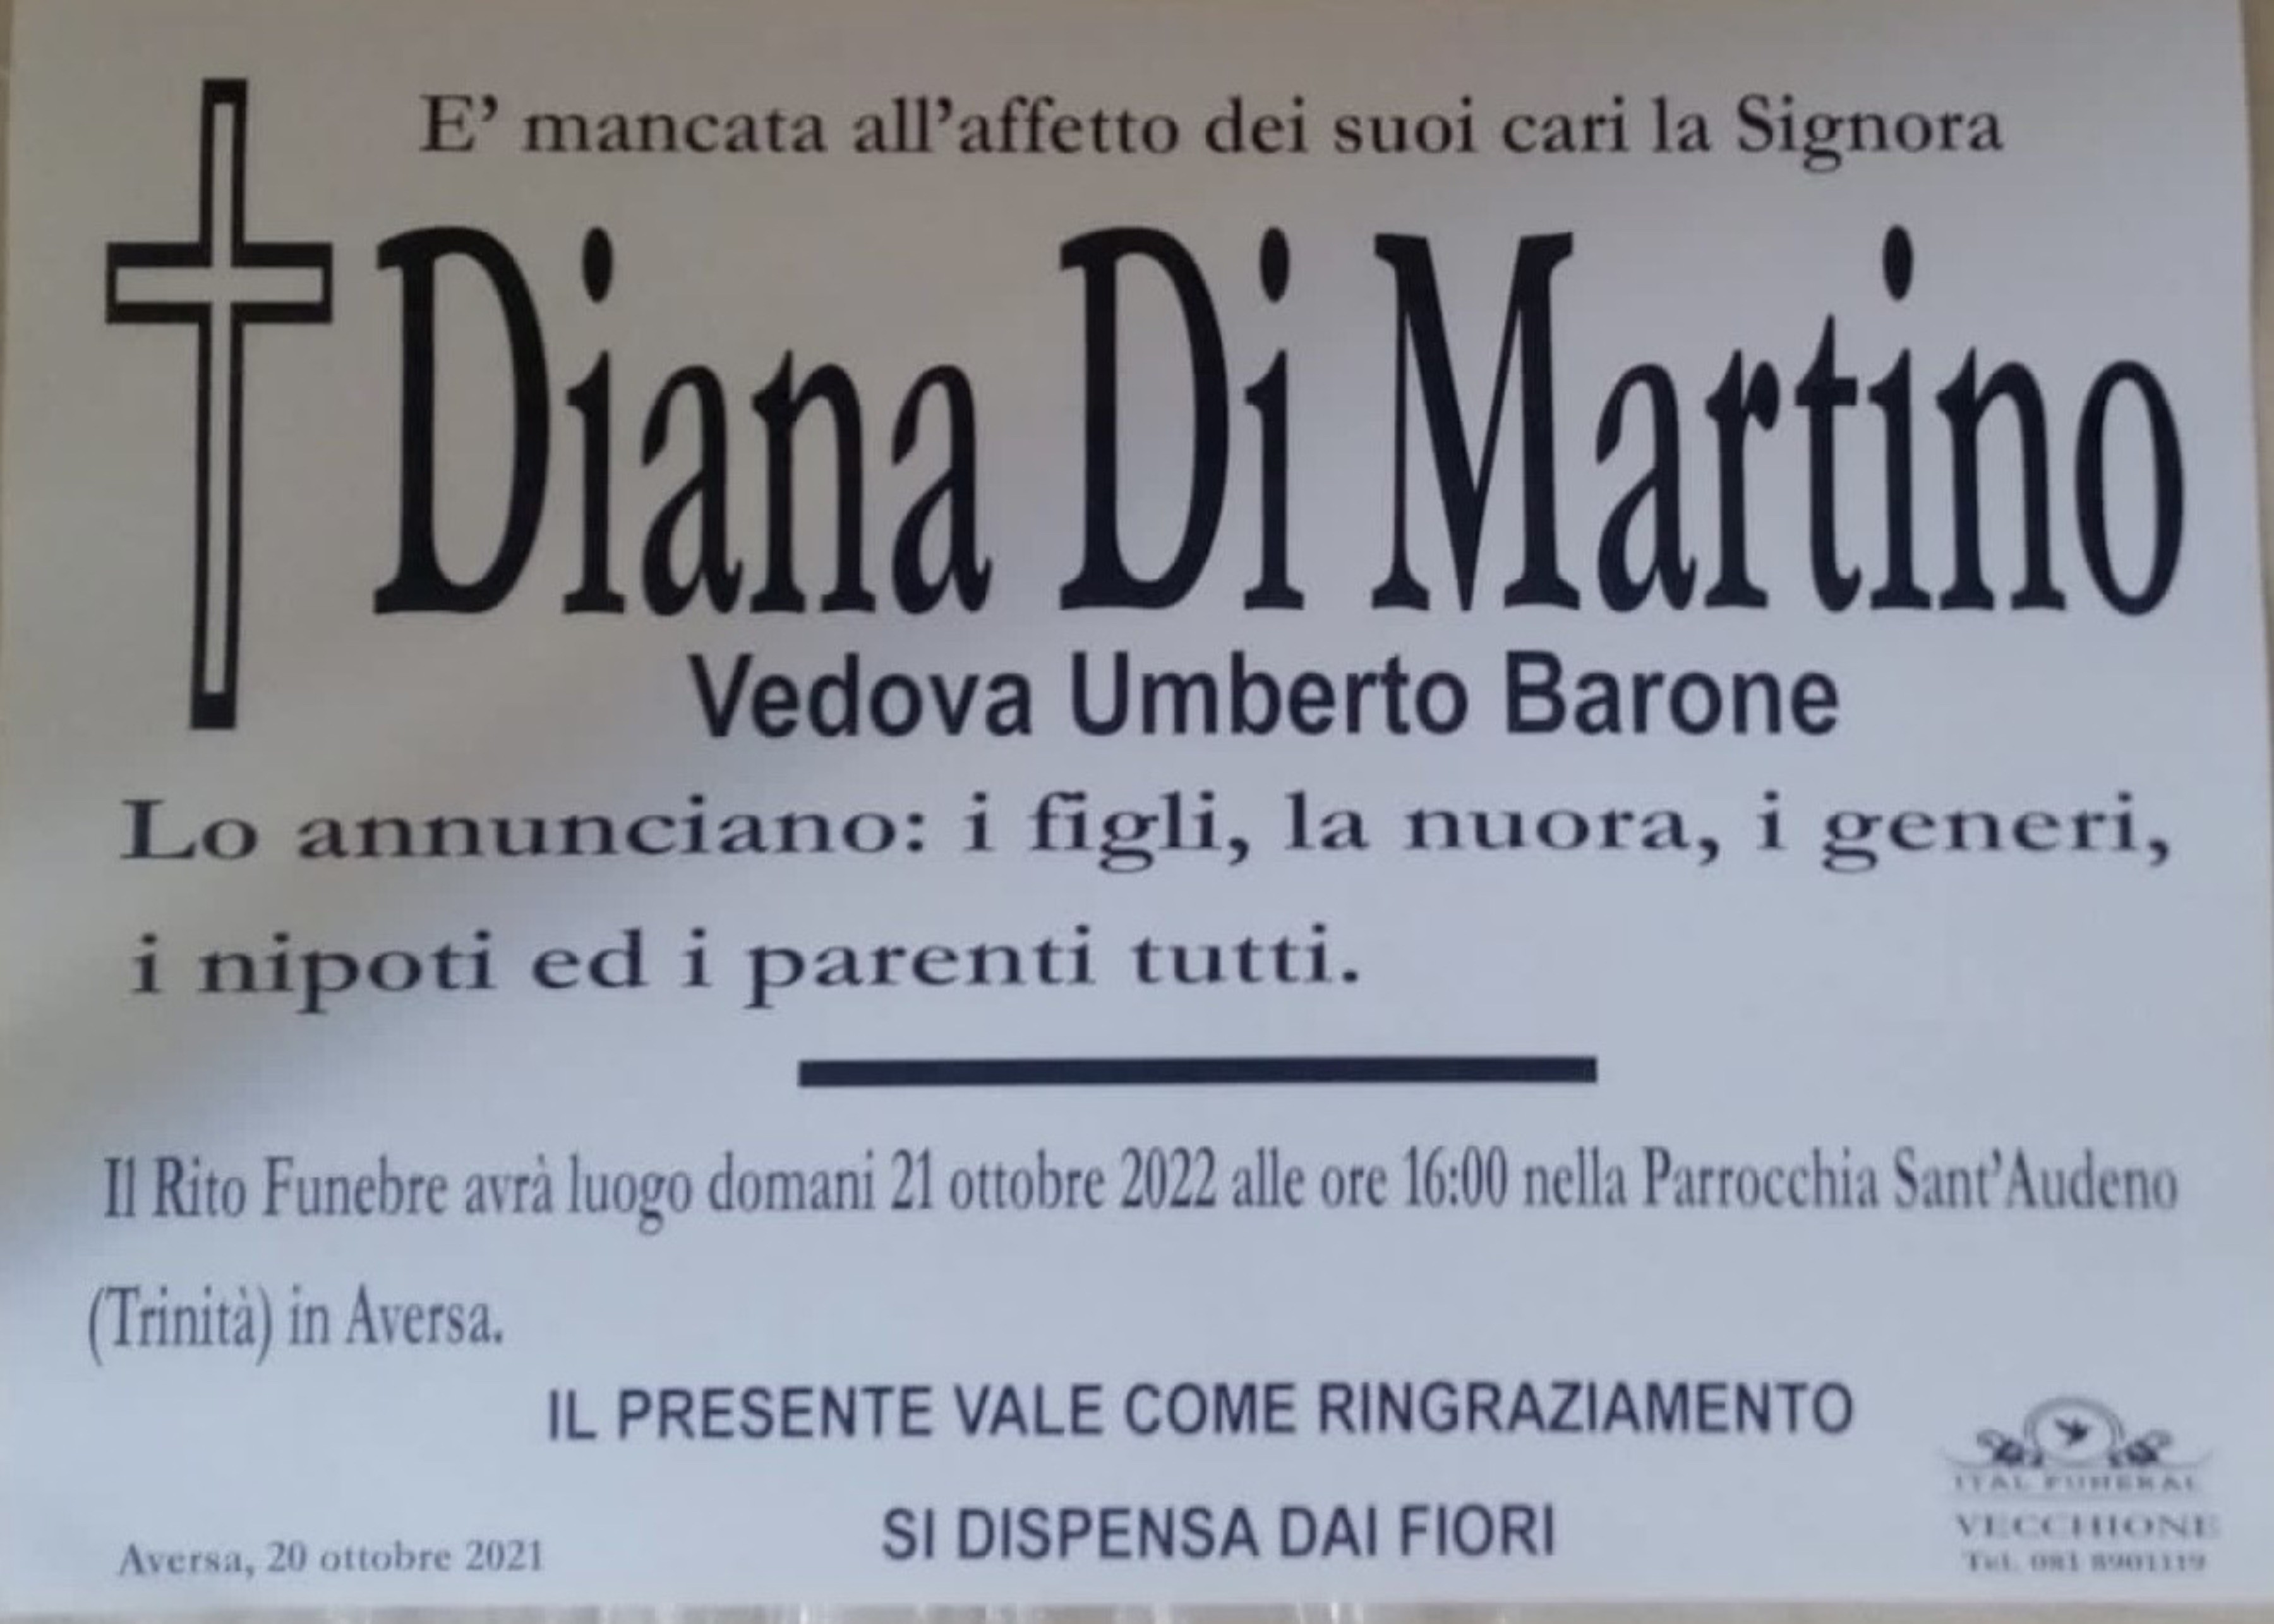 Diana Di Martino